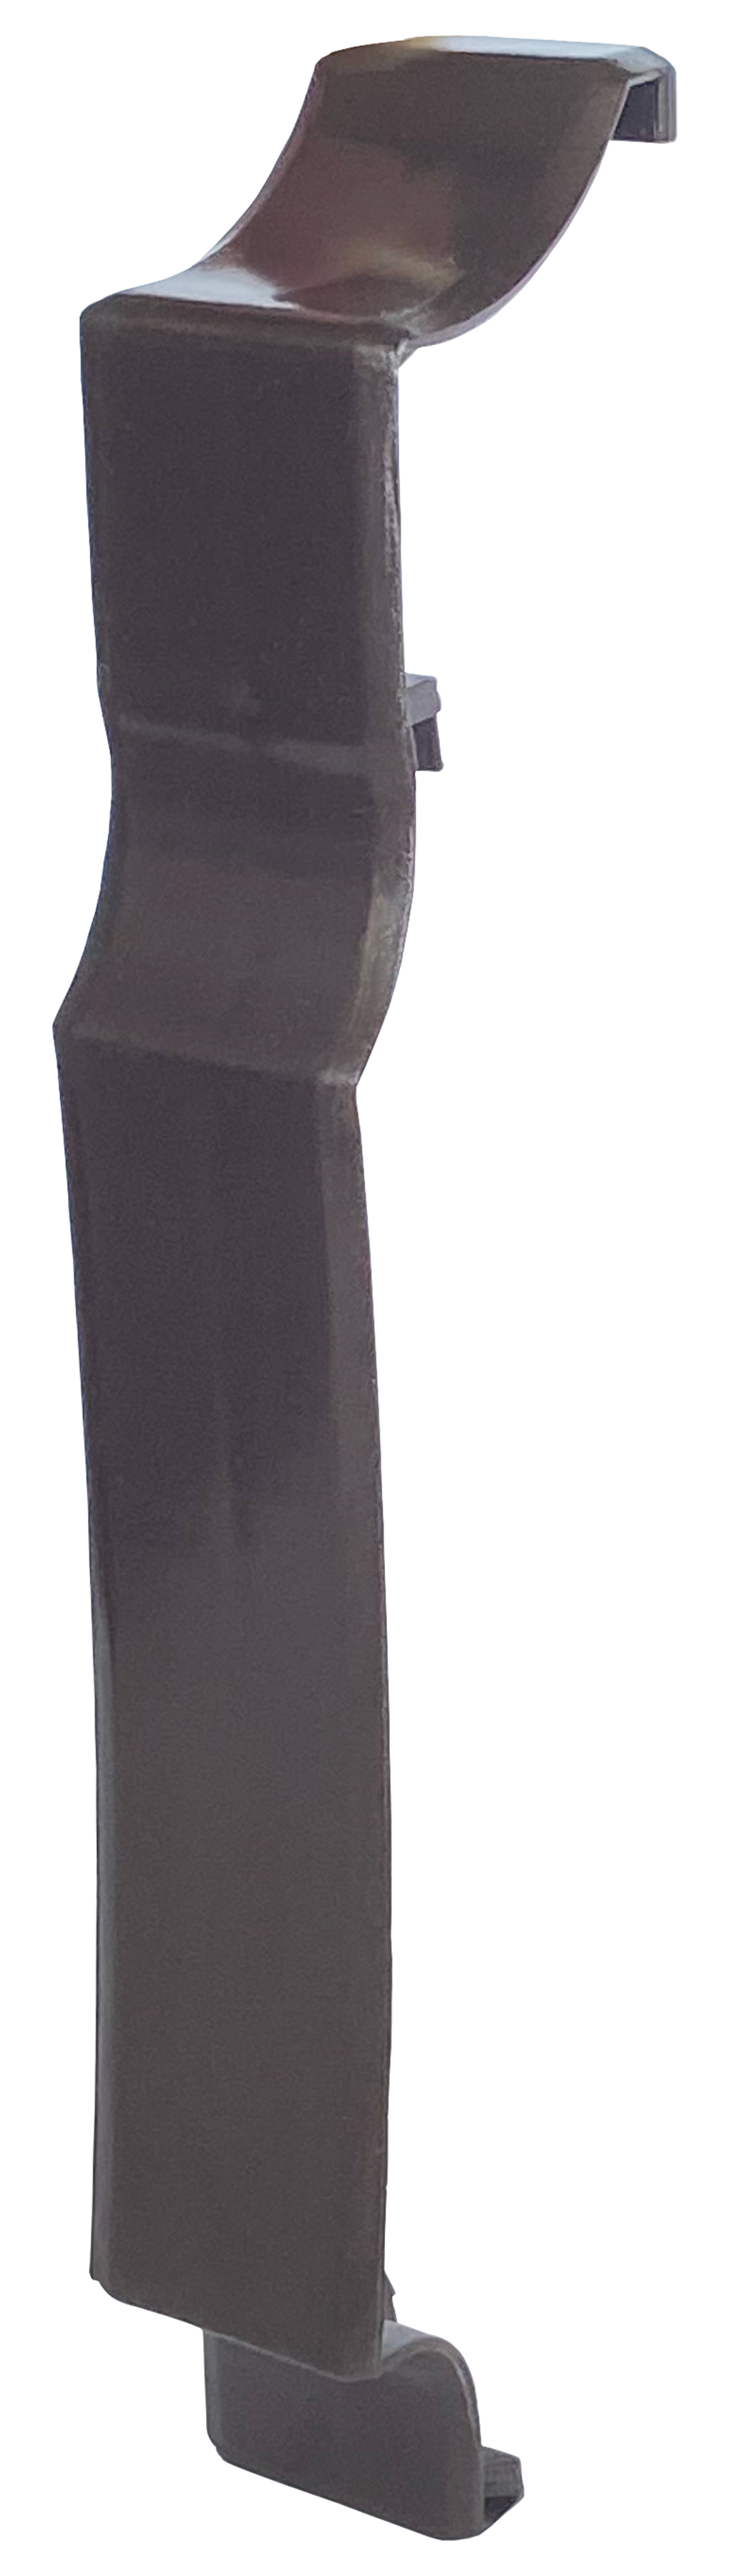 Ціна аксесуар для плінтусного нагрівача Термія планка з'єднувальна ПЗ (коричнева) в Херсоні